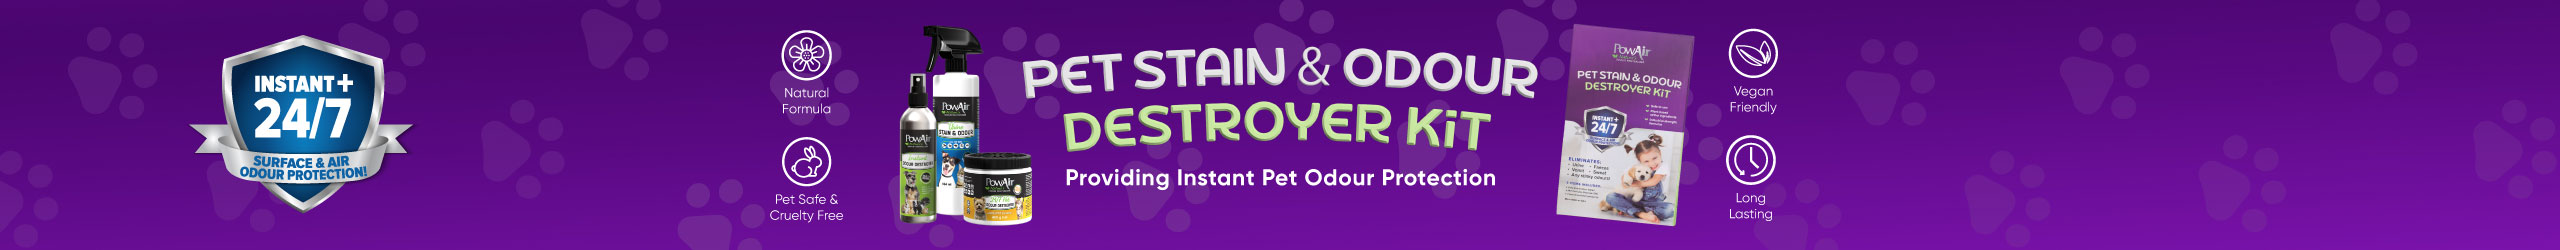 PowAir Pet Stain & Odour Destroyer Kit